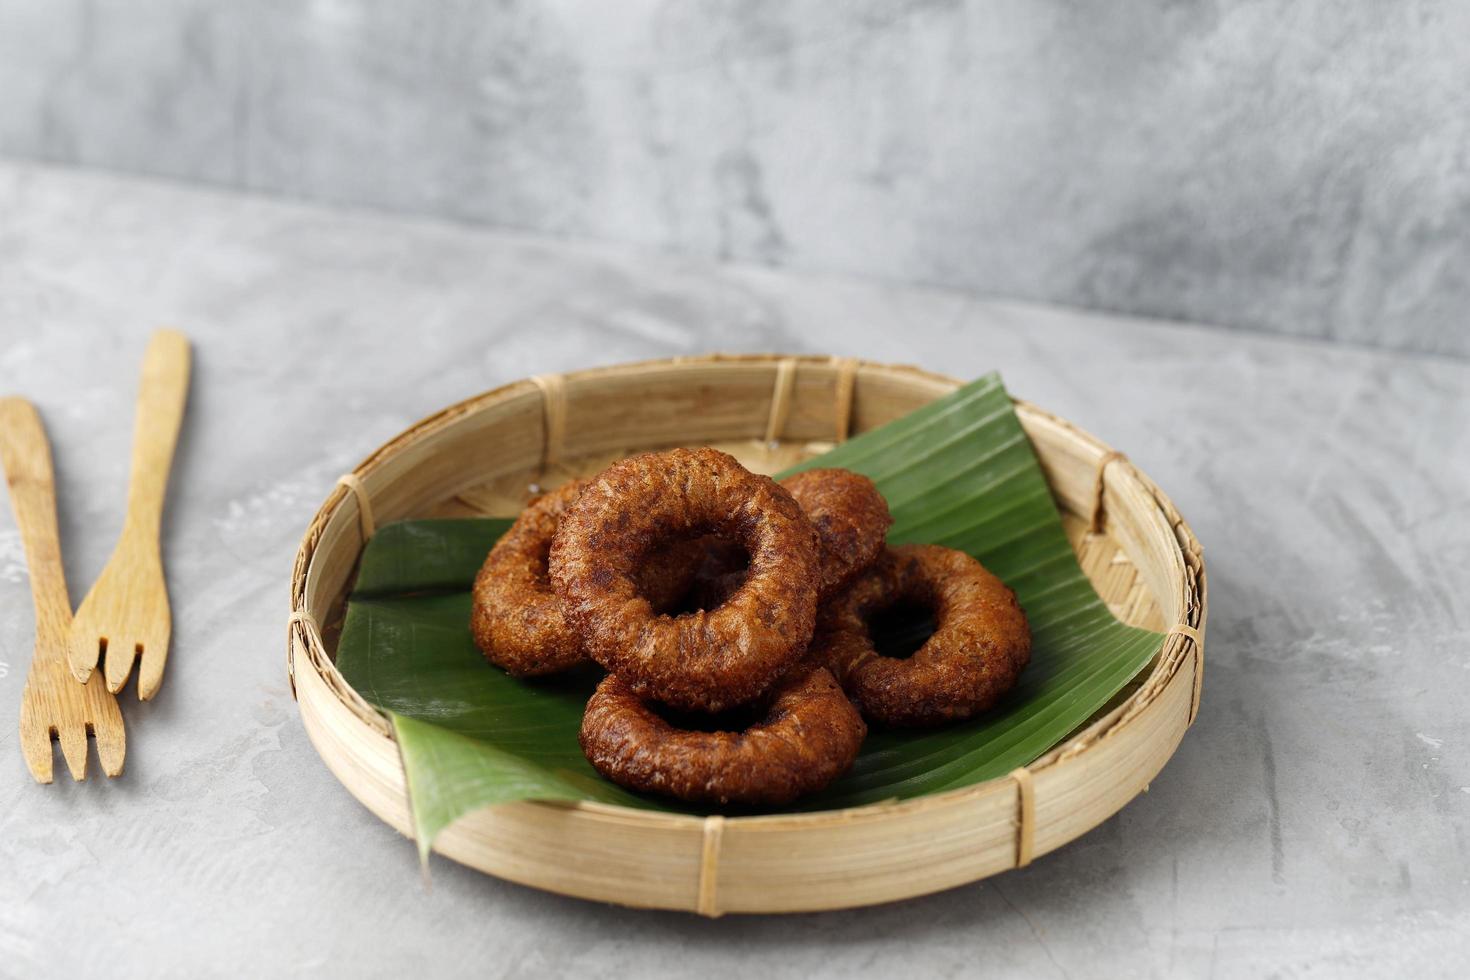 kue cincin of ali agrem, traditionele indonesische snack uit west java, indonesië. meestal geserveerd met thee foto